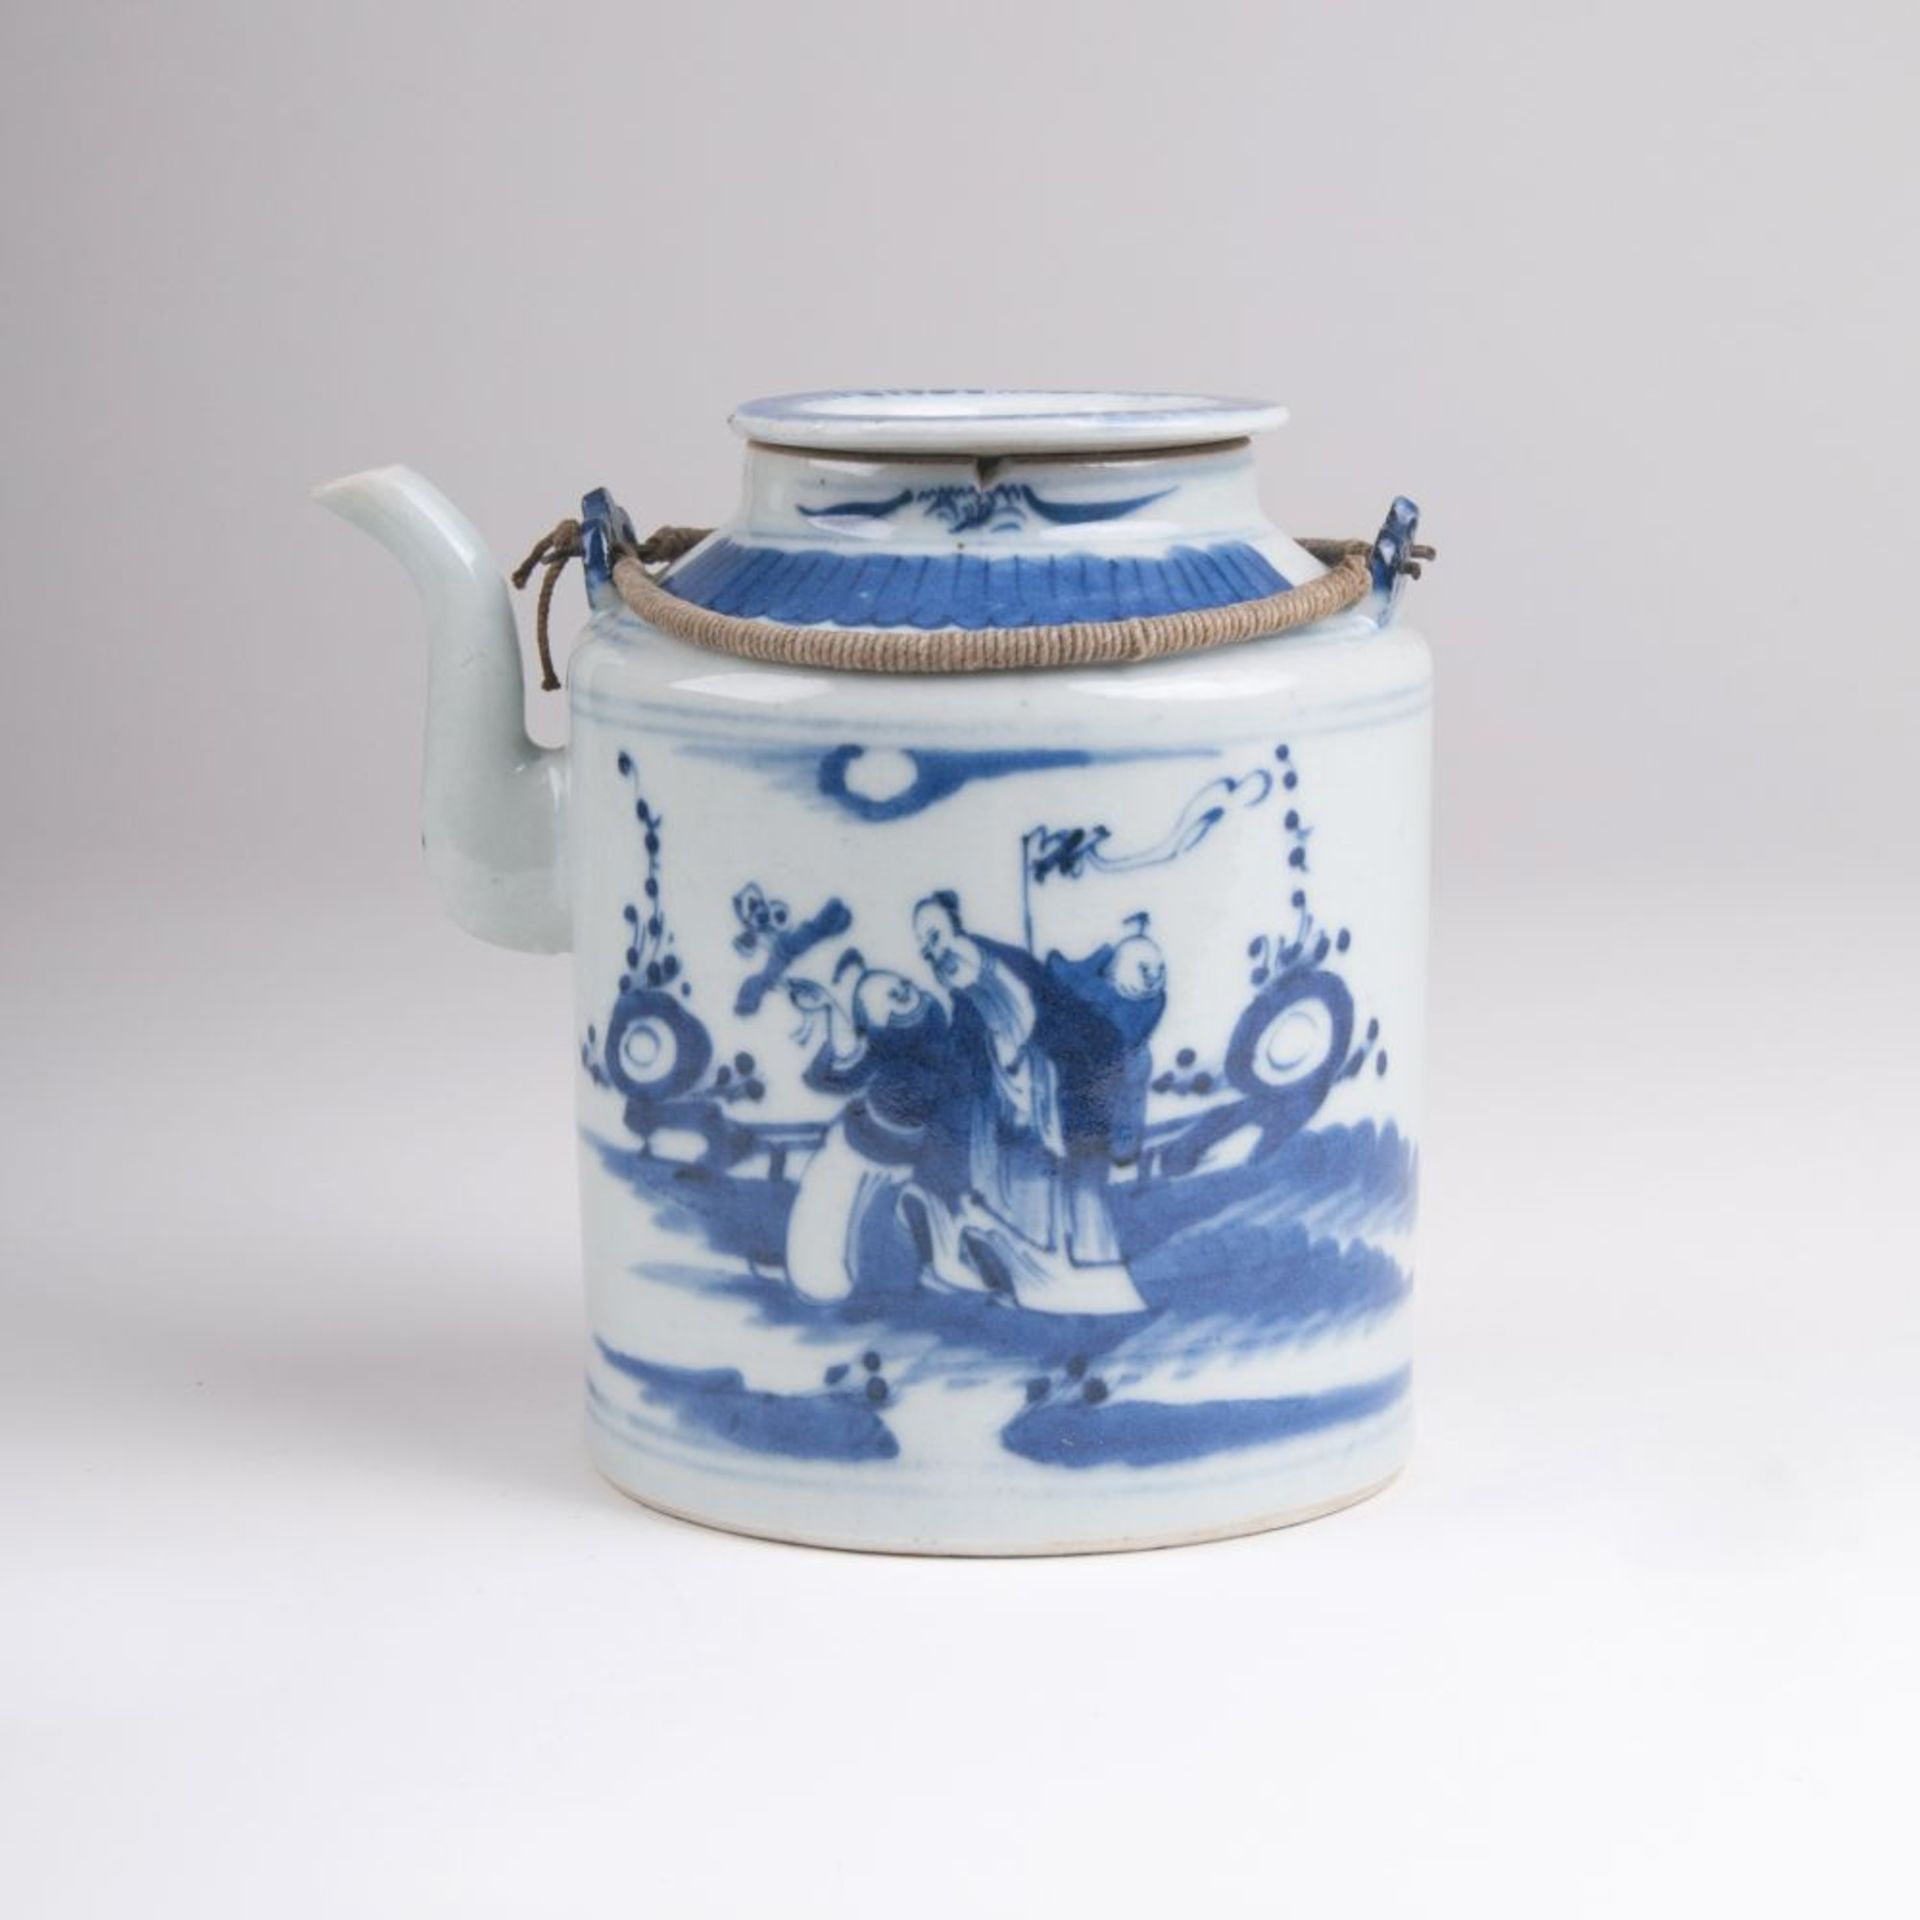 Blau-weiß Teekanne mit figürlichen SzenenChina, späte Qing-Dynastie (1644-1911). Porzellan.